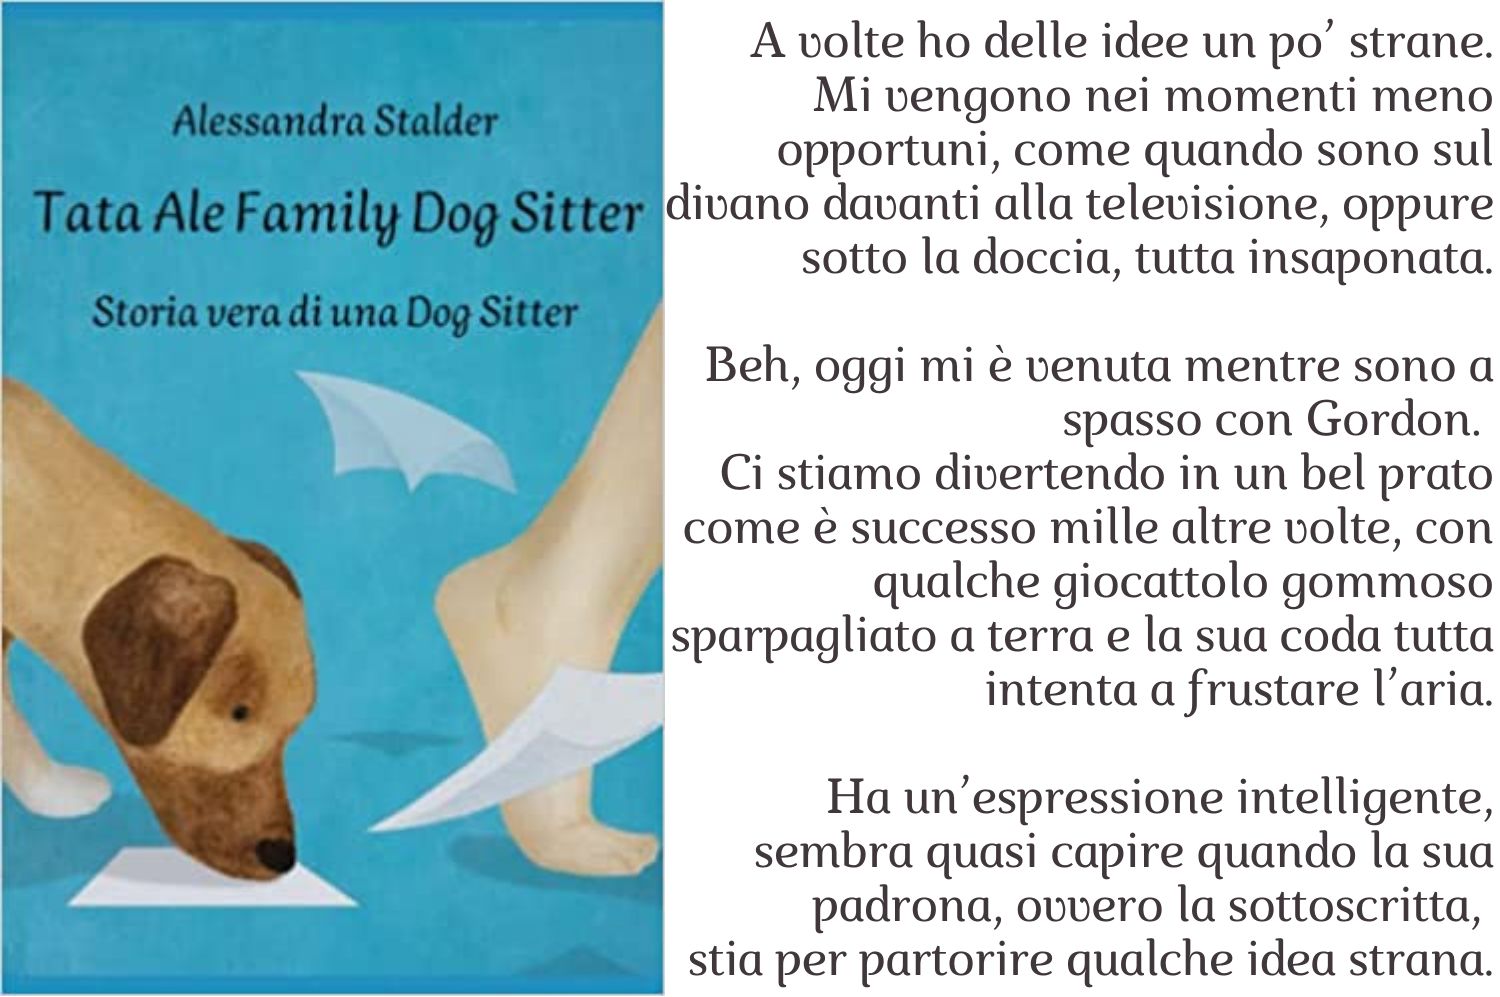 Tata Ale family Dog Sitter, libro di Alessandra Stalder